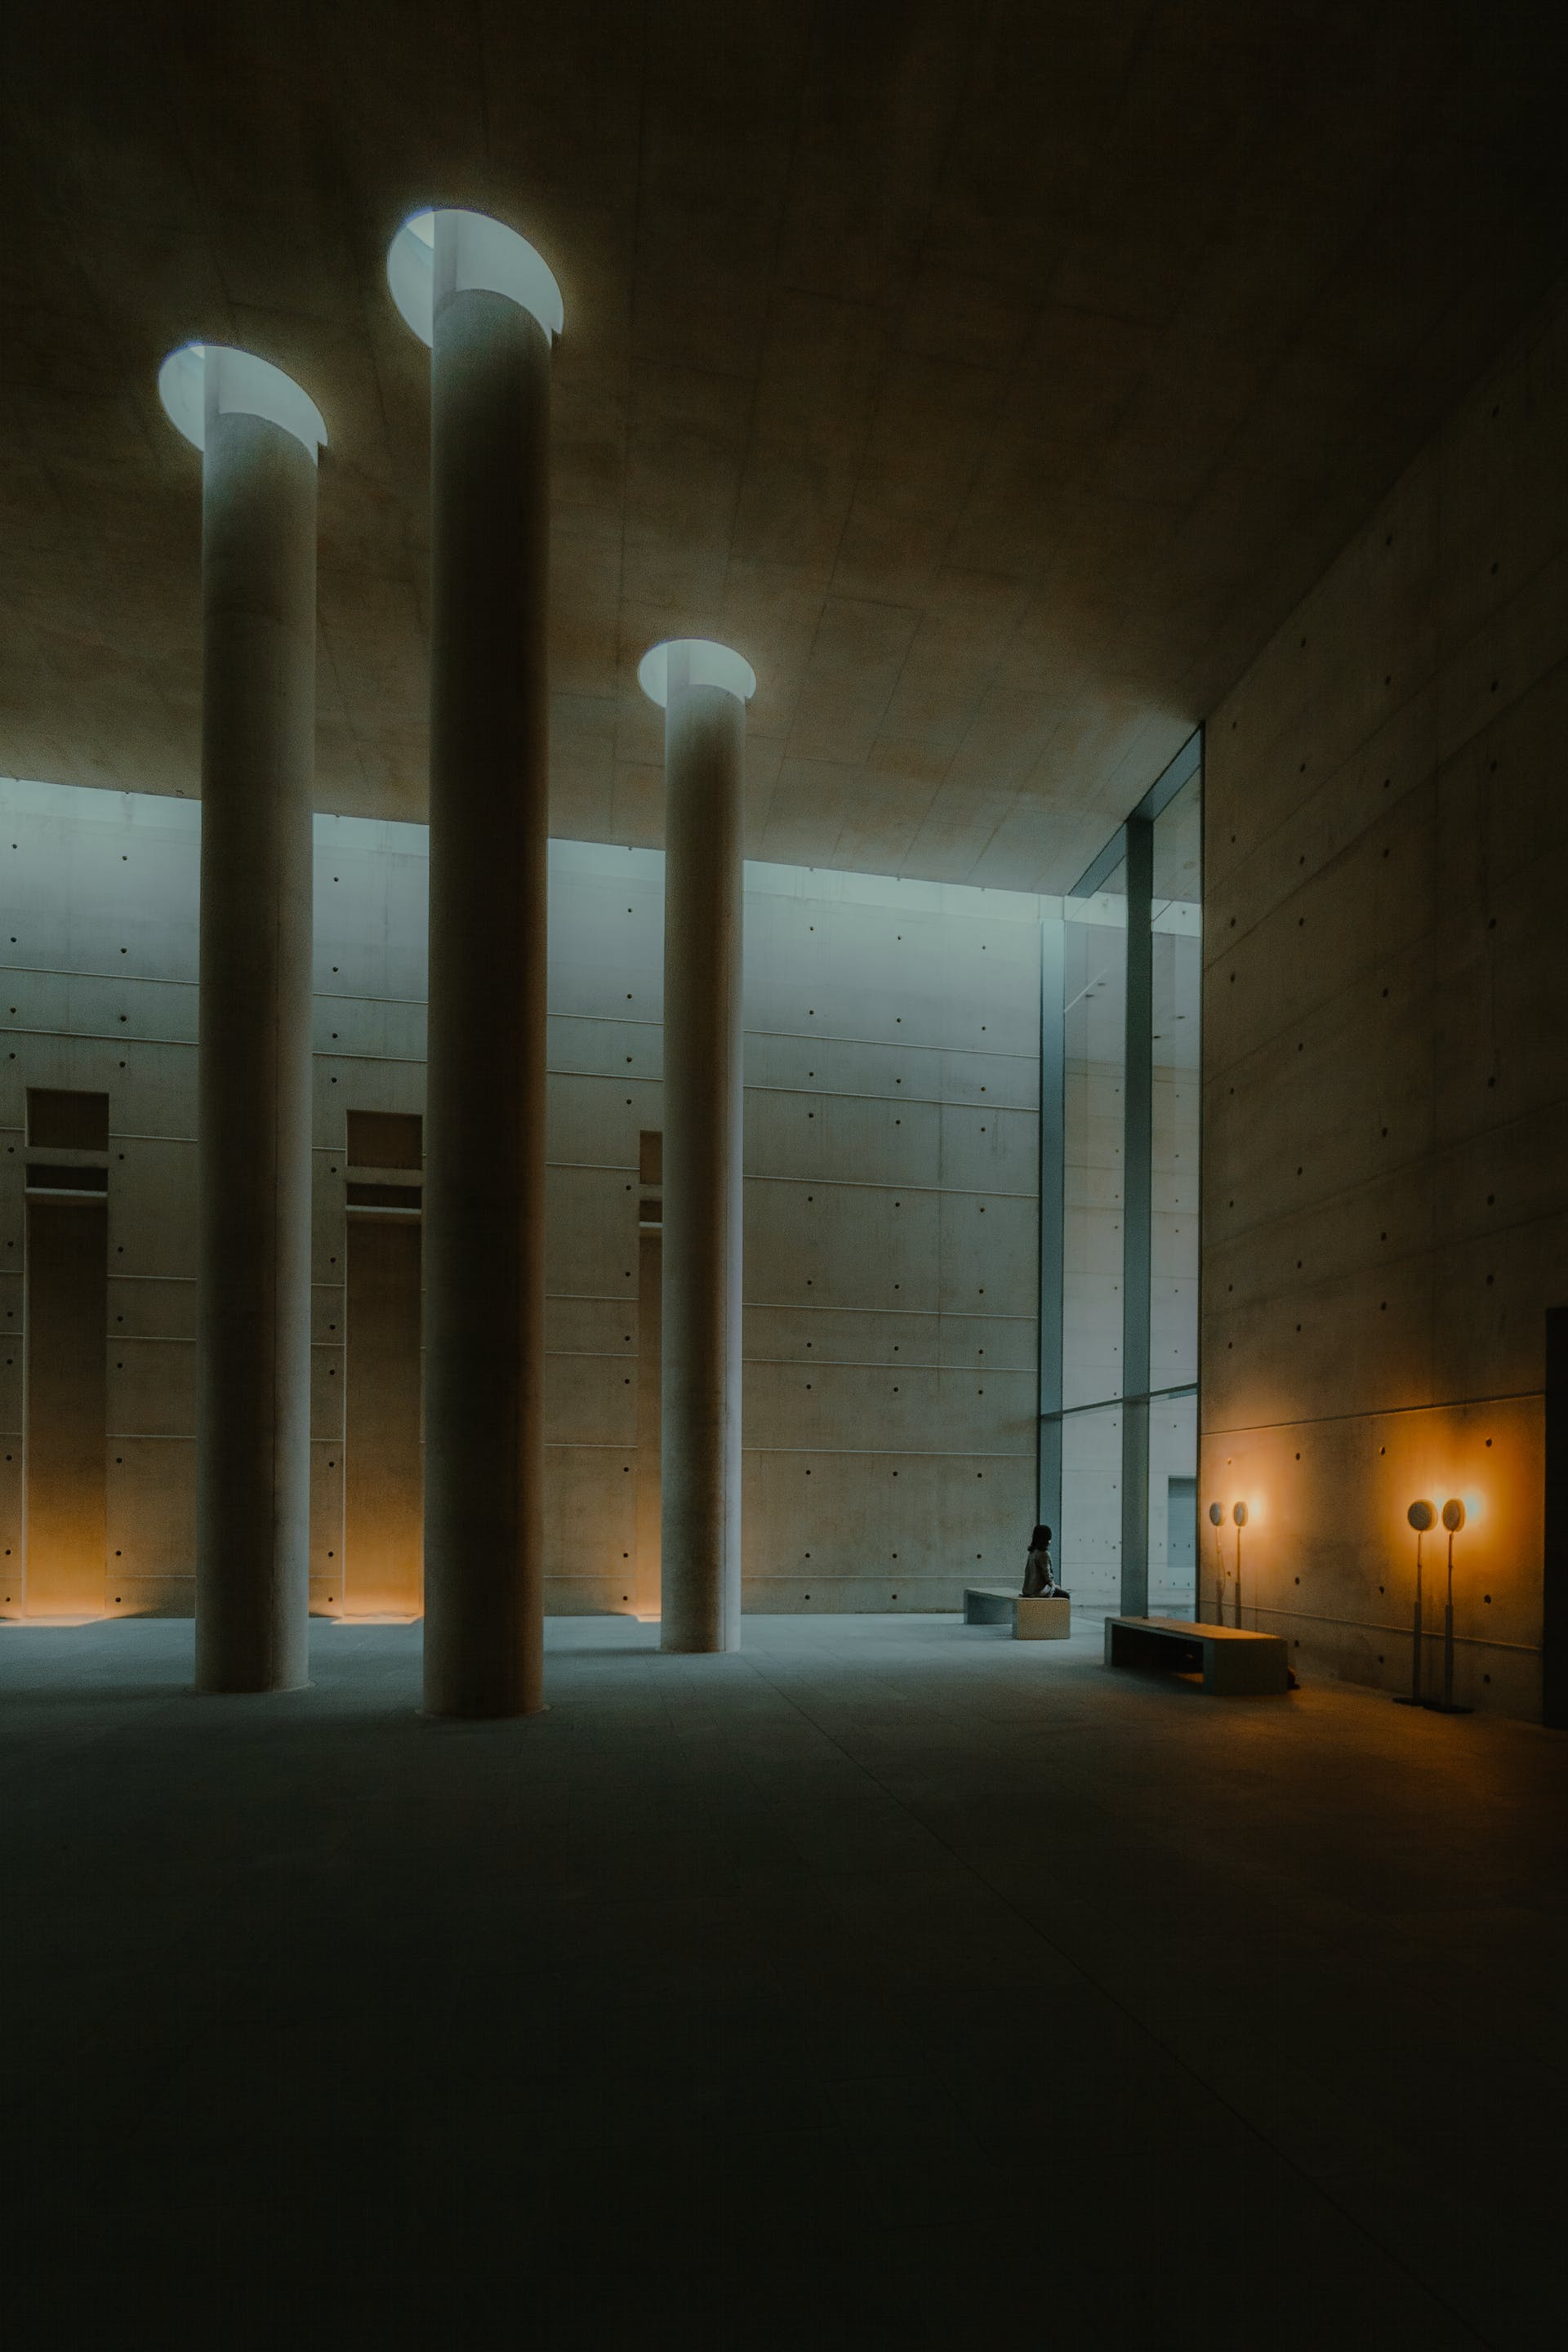 A crematorium building | Source: Pexels